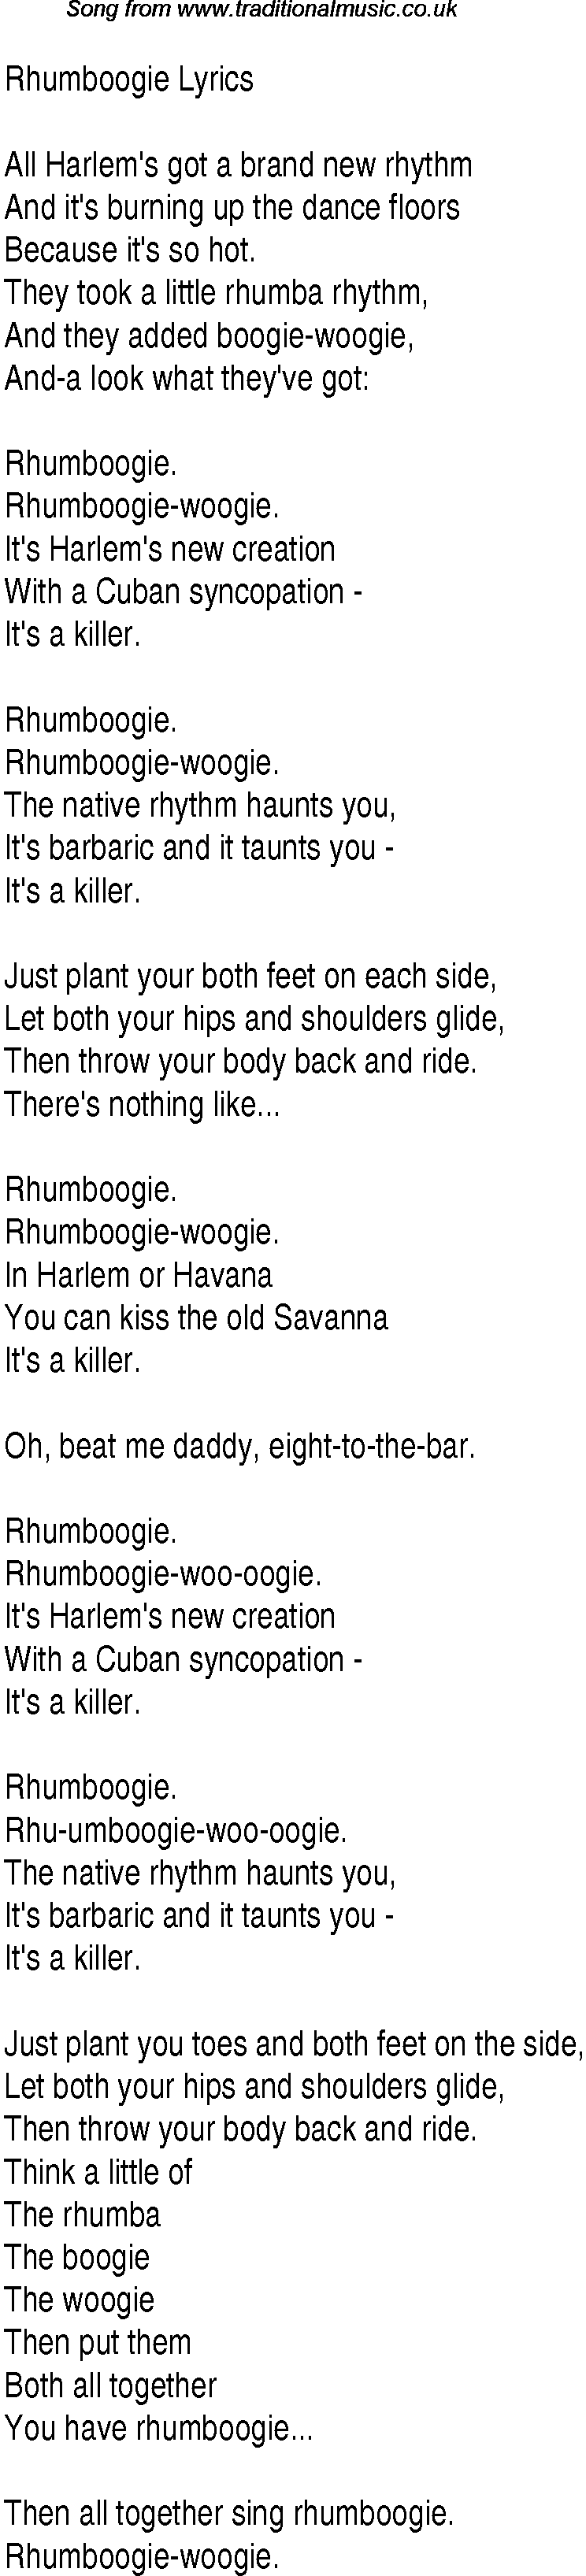 1940s top songs - lyrics for Rhumboogie(Andrews Sisters)